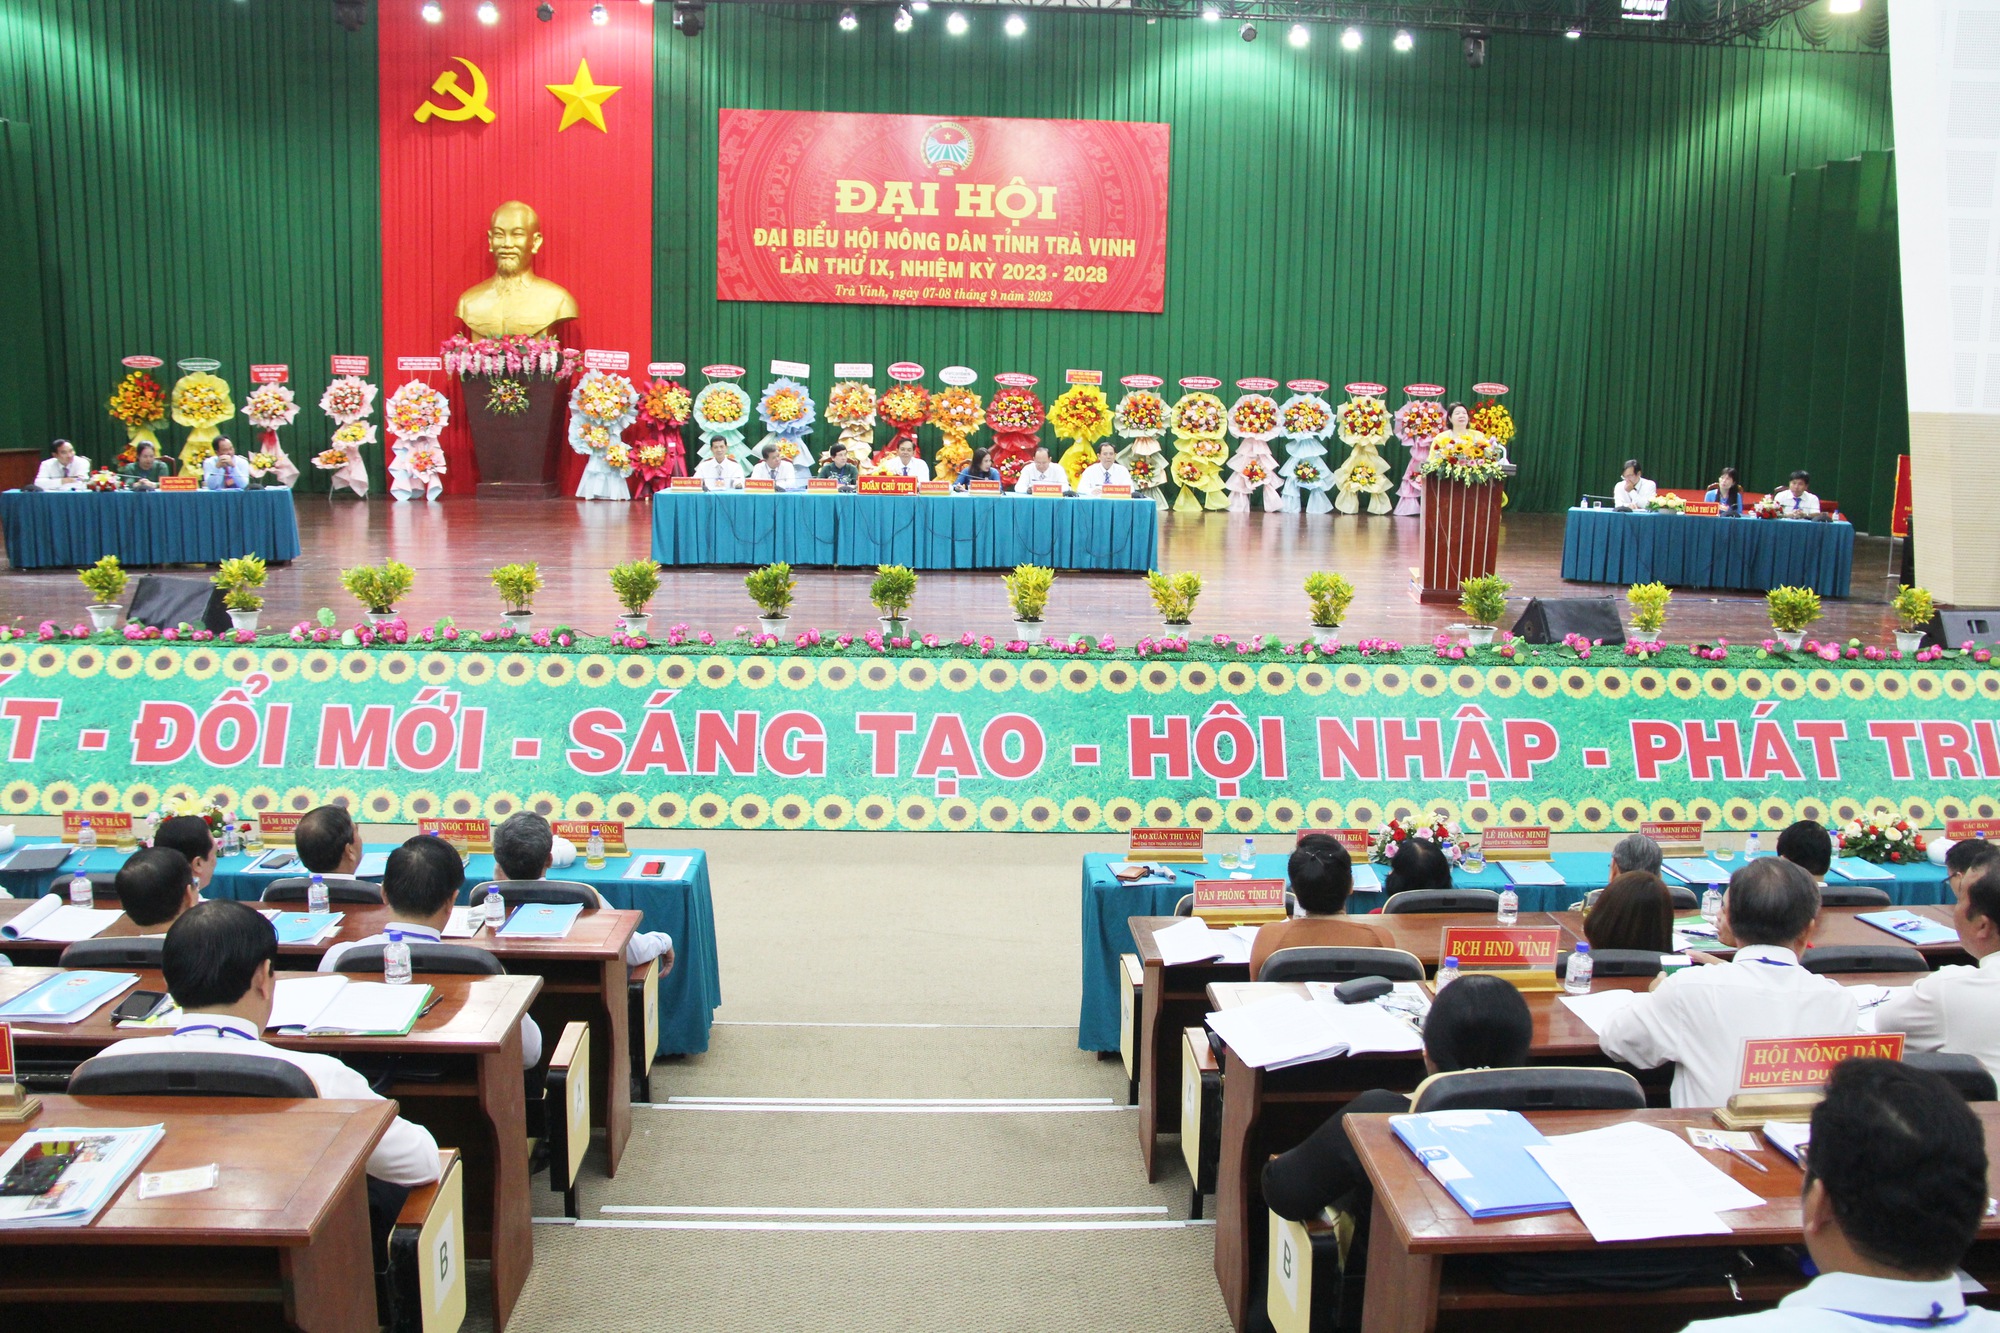 Bí thư Tỉnh ủy Trà Vinh, Phó Chủ tịch TƯ Hội NDVN dự, chỉ đạo Đại hội Hội Nông dân tỉnh Trà Vinh - Ảnh 2.